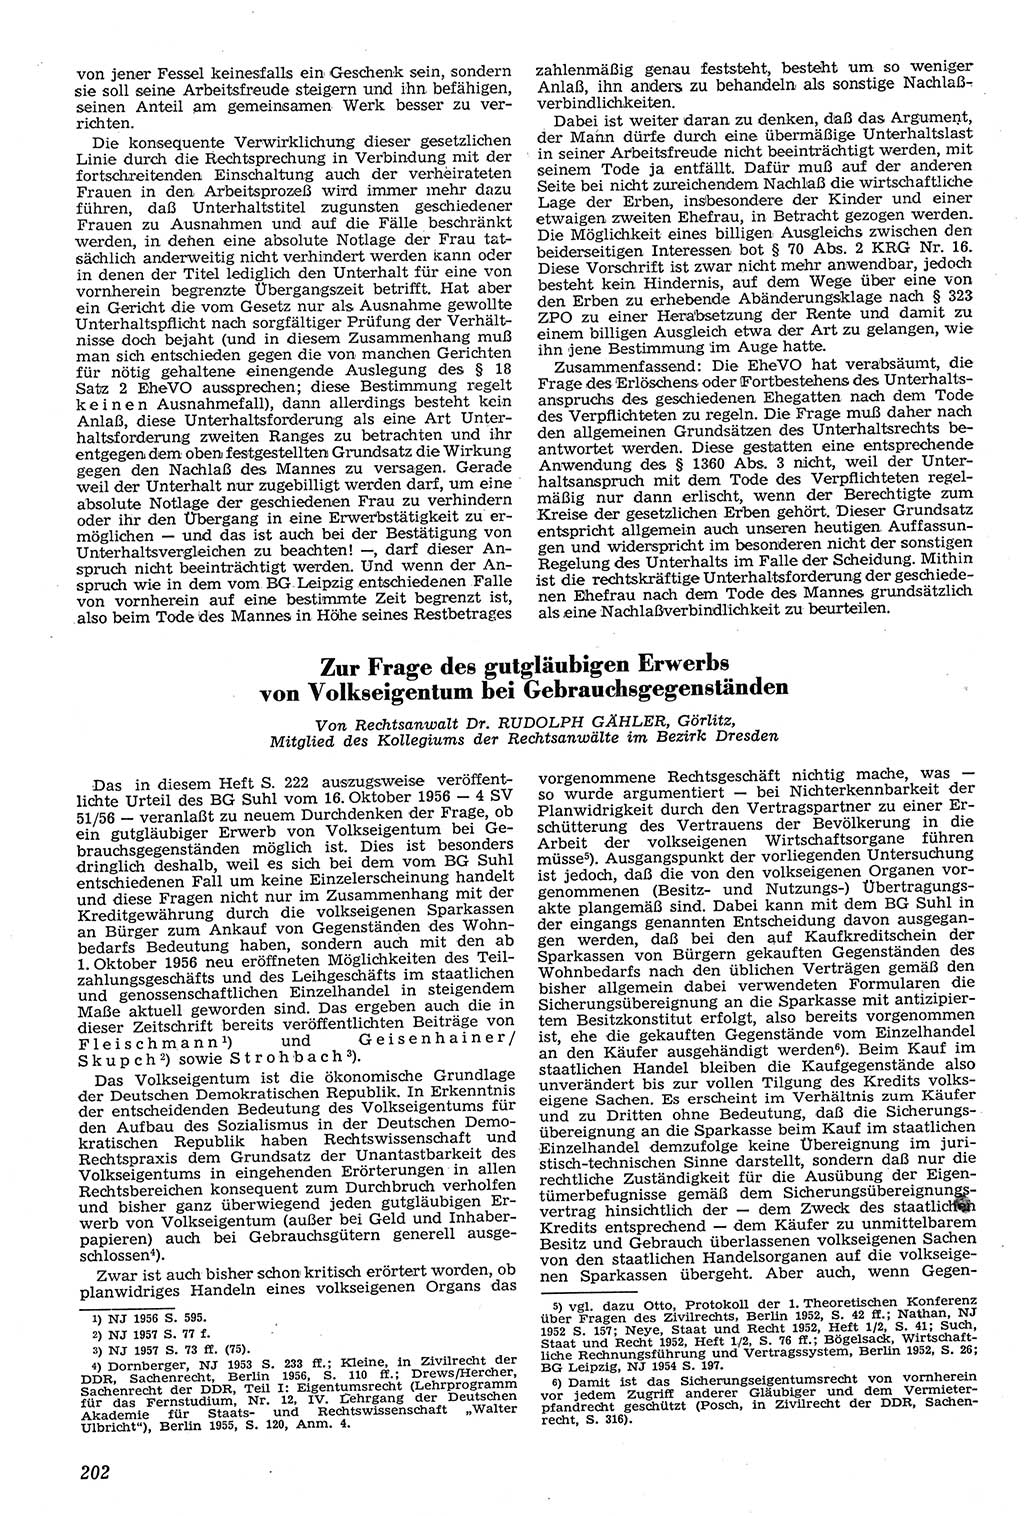 Neue Justiz (NJ), Zeitschrift für Recht und Rechtswissenschaft [Deutsche Demokratische Republik (DDR)], 11. Jahrgang 1957, Seite 202 (NJ DDR 1957, S. 202)